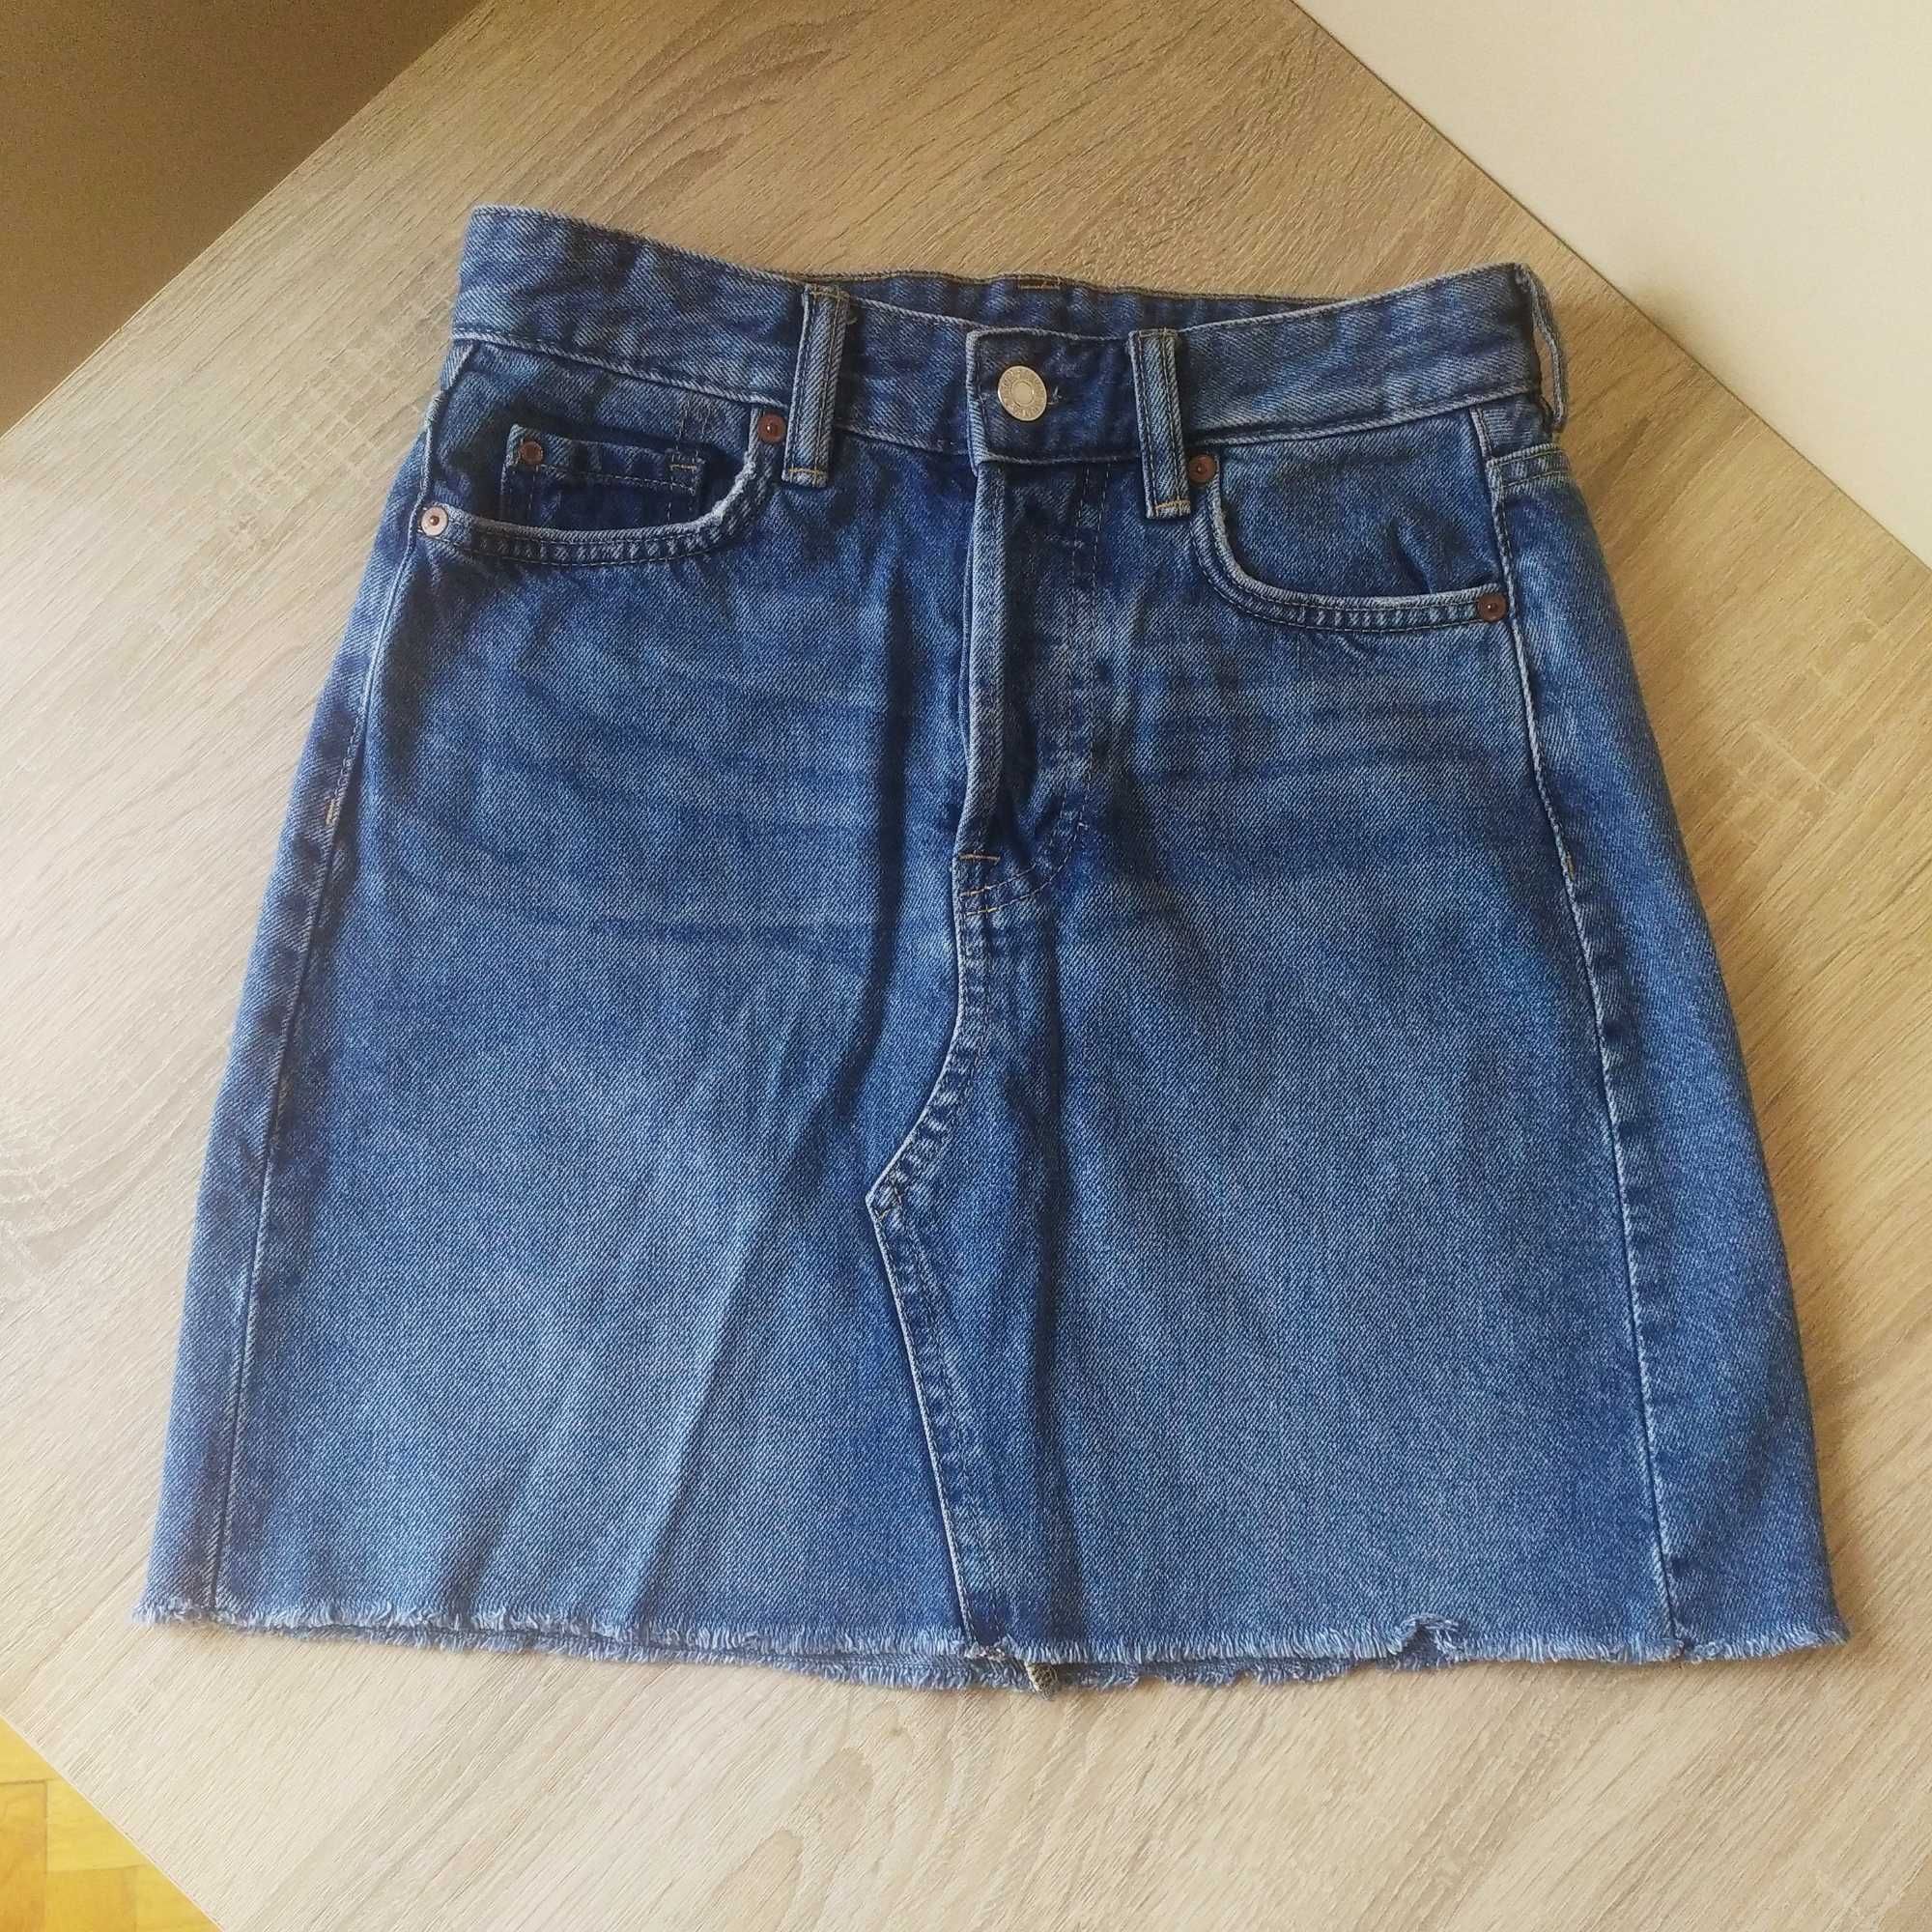 Niebieska jeansowa spódnica mini z kieszeniami, 100 % cotton,H&M r.XS